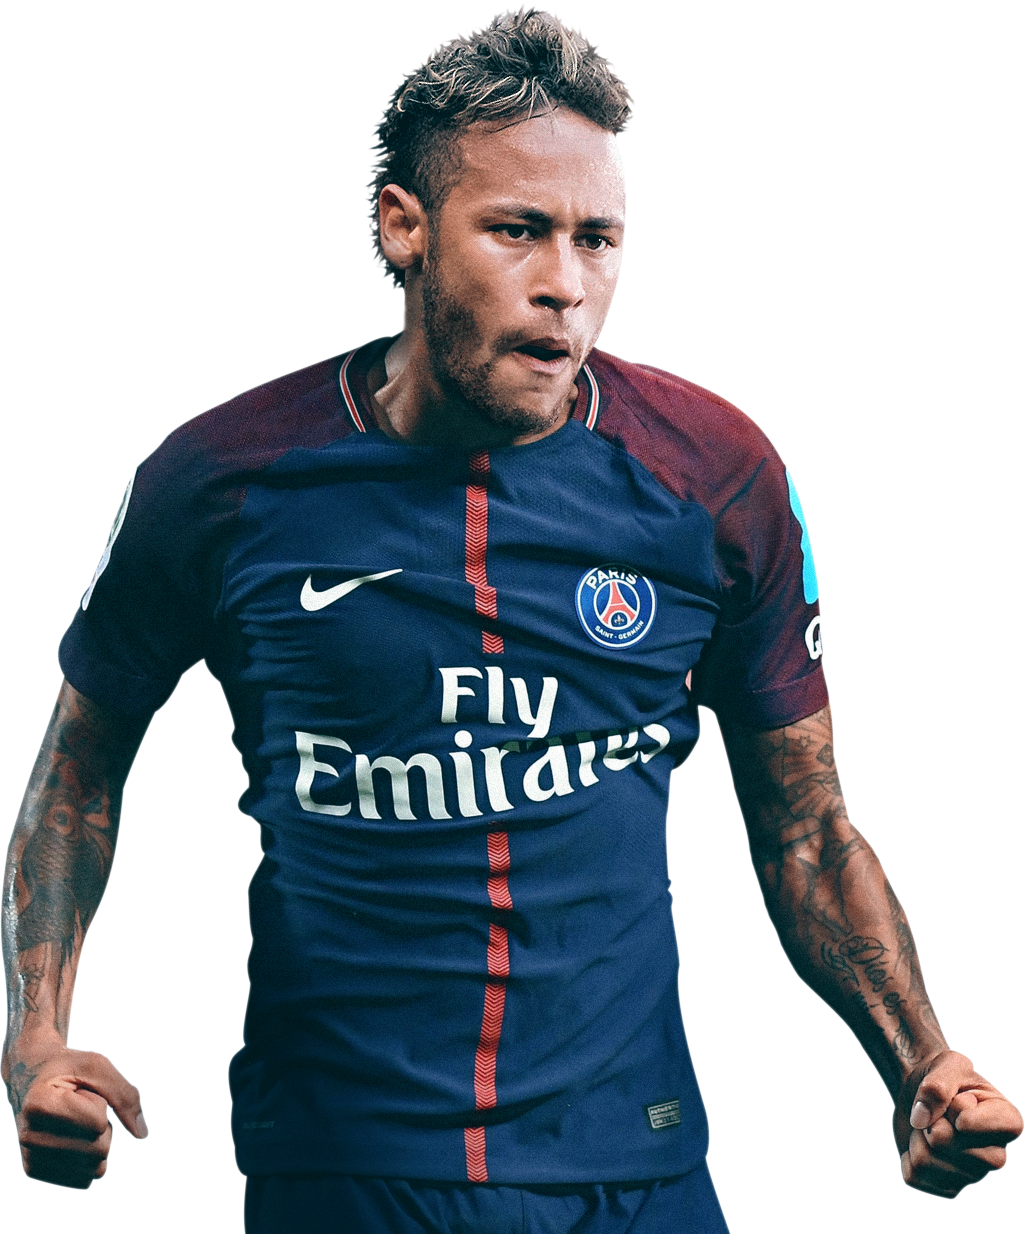 Cùng xem hình ảnh Neymar Football Render - một bức tranh đầy màu sắc về tài năng của cầu thủ này. Những đường chạy ngoạn mục và pha xử lý tài tình chắc chắn sẽ khiến bạn không thể rời mắt.